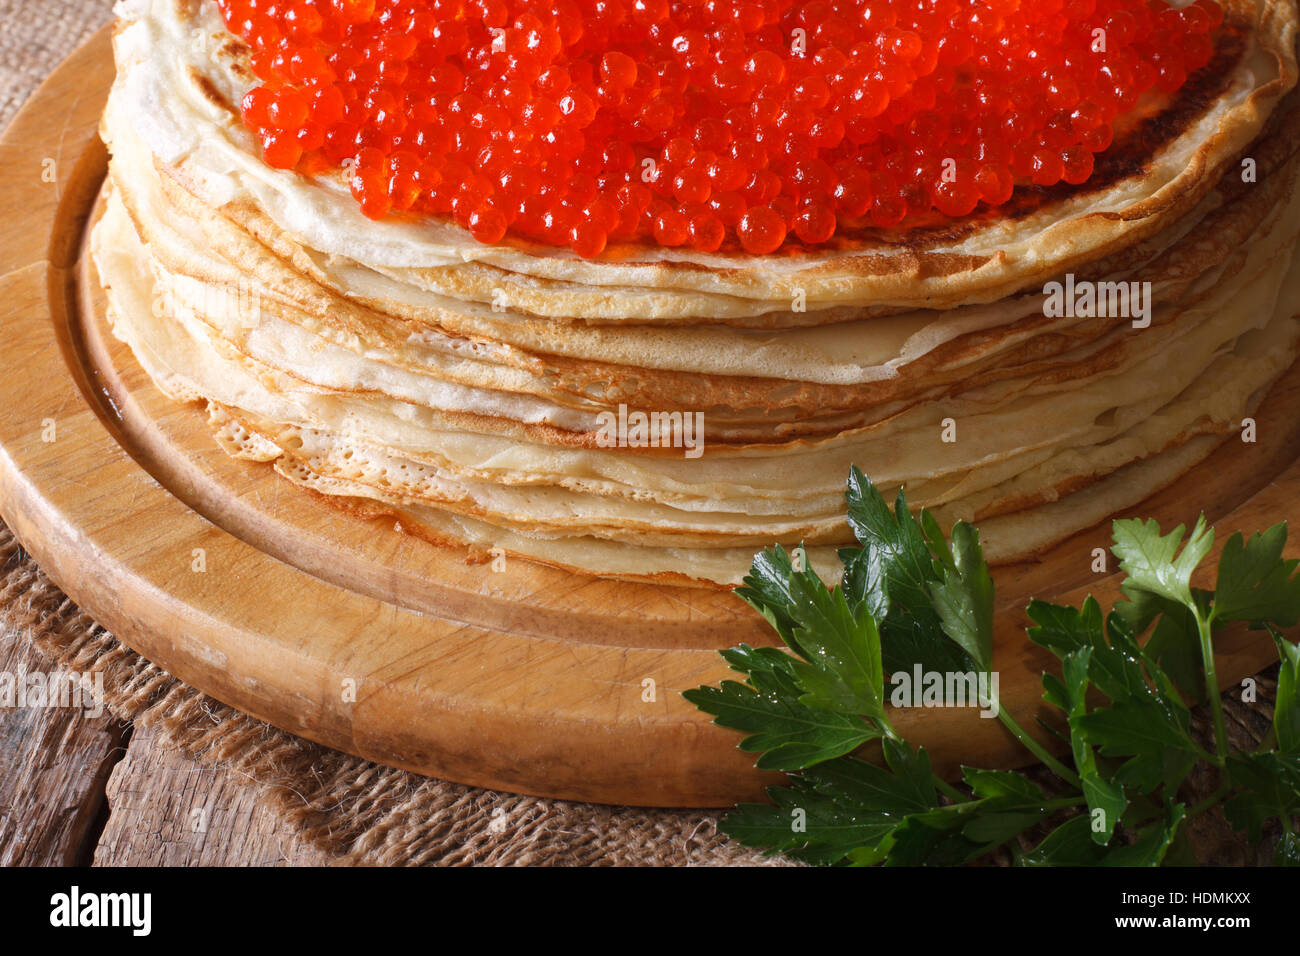 Una pila di sottili crepes con caviale rosso di close-up. orizzontale, stile rustico Foto Stock